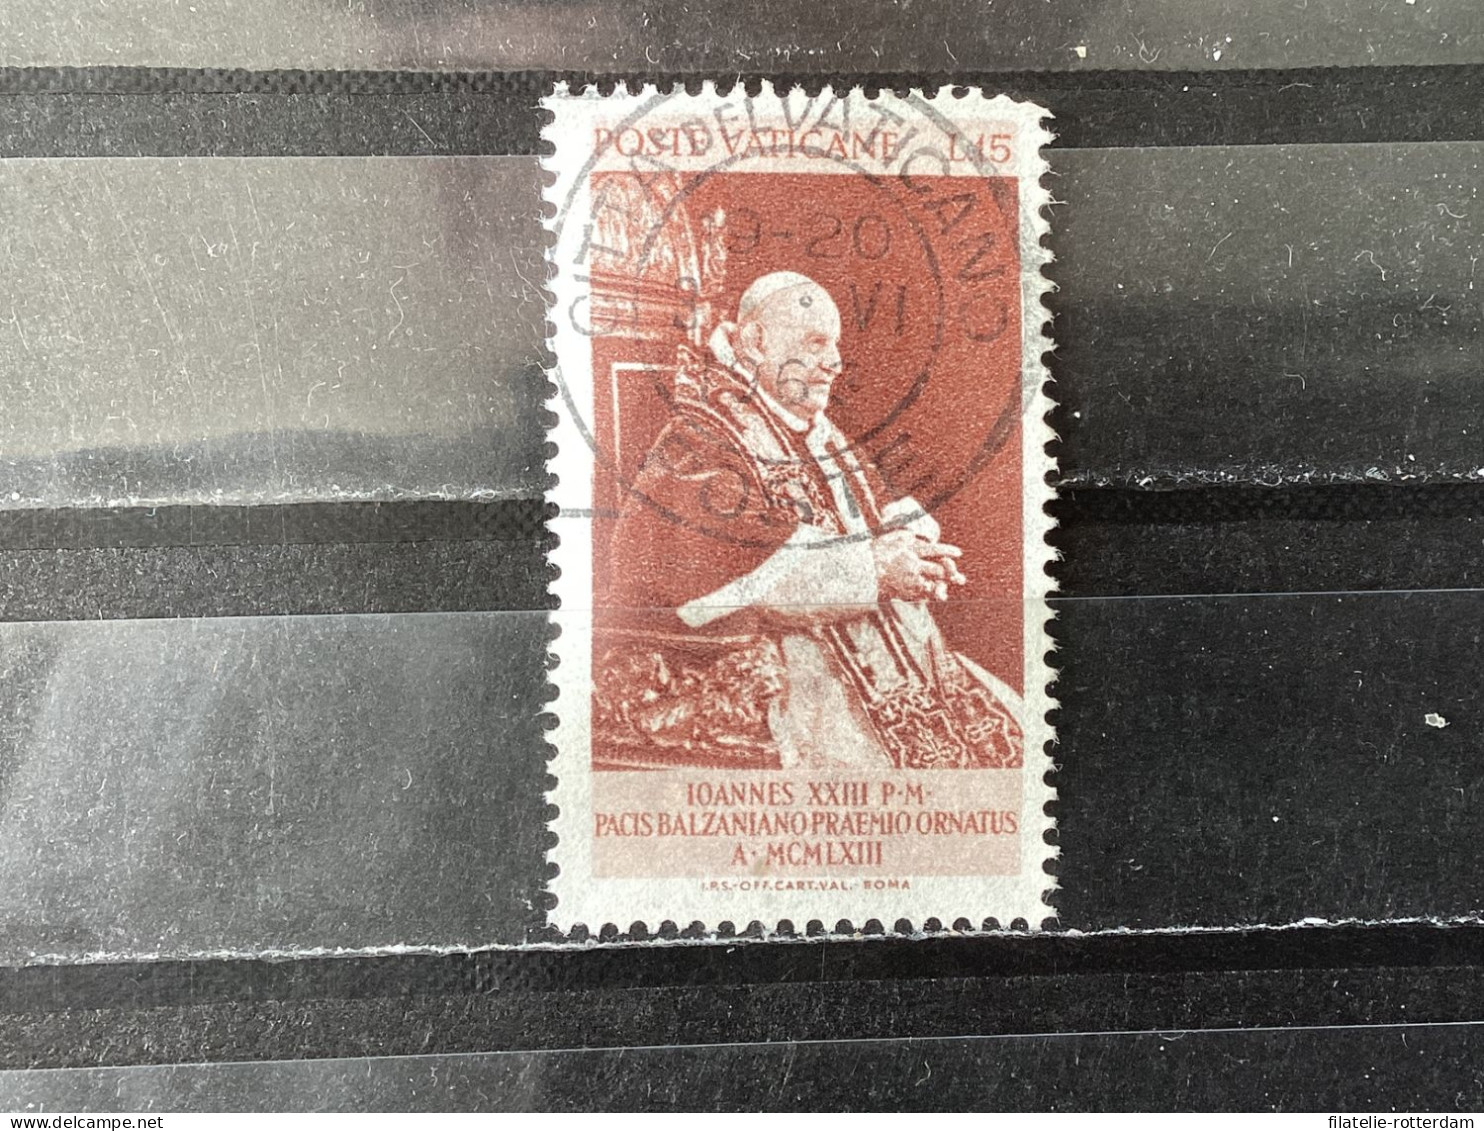 Vatican City / Vaticaanstad - Balzan Price For Peace (15) 1963 - Used Stamps